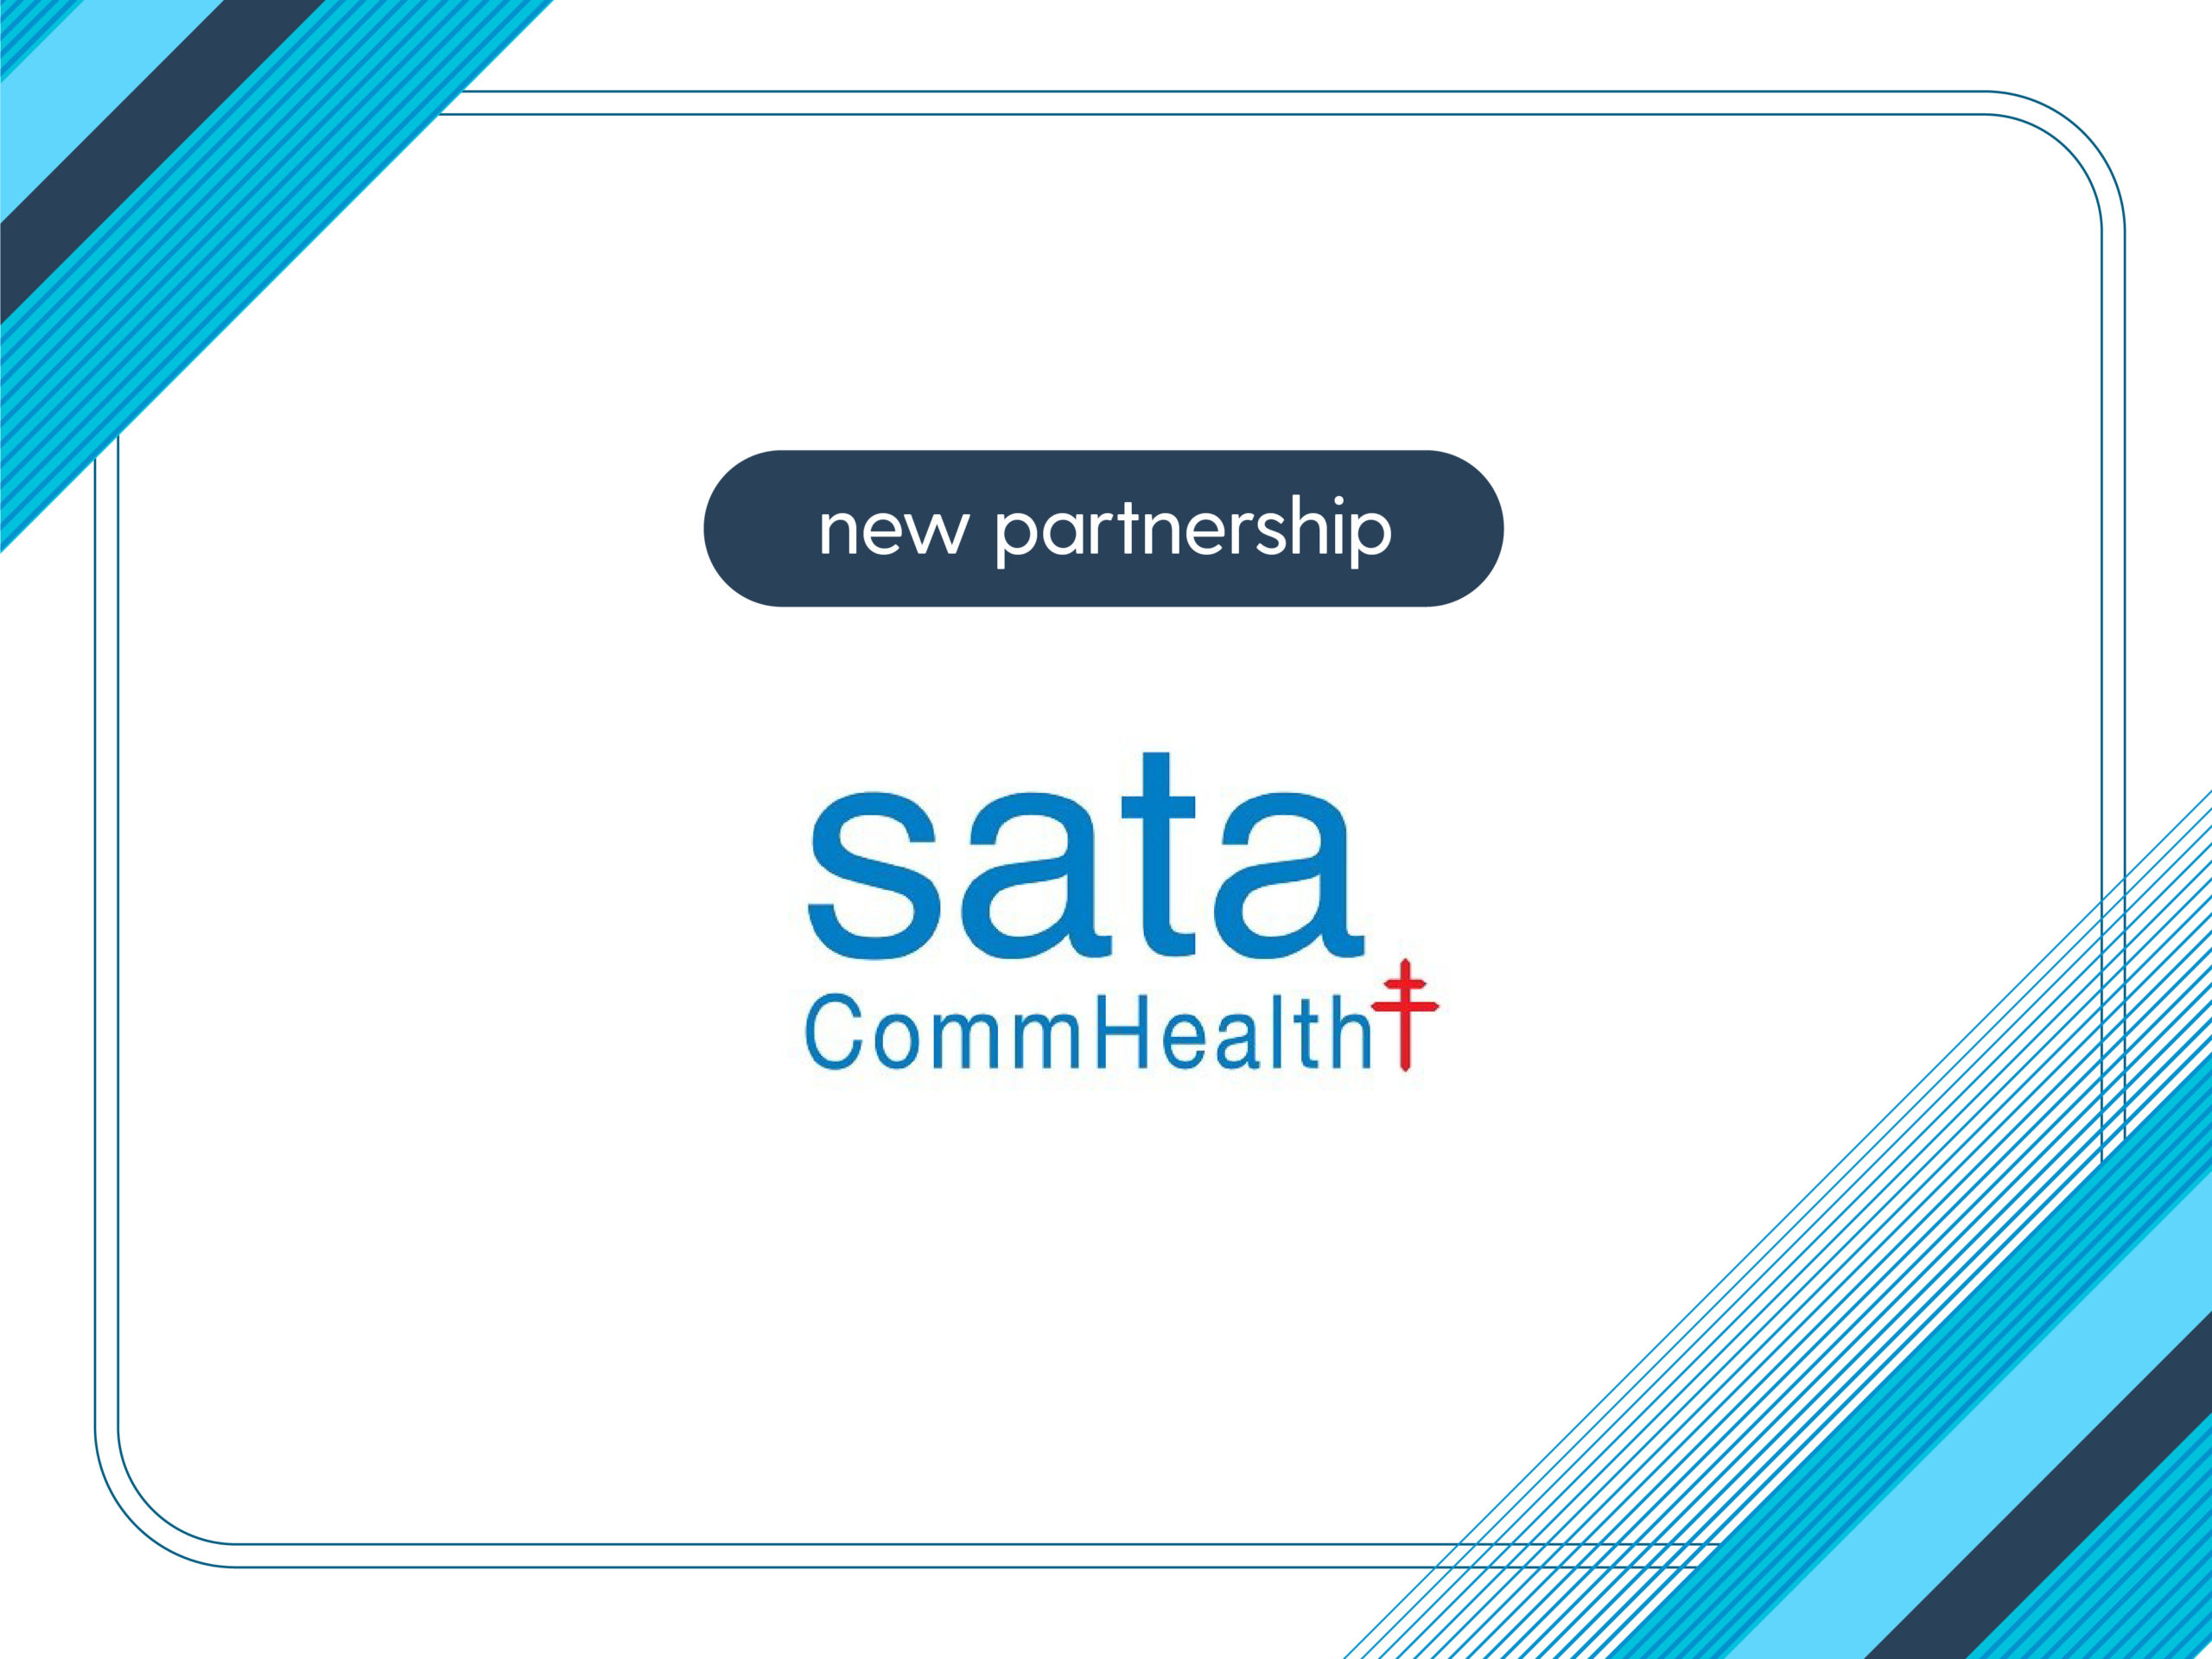 SATA CommHealth Joins Mednefits